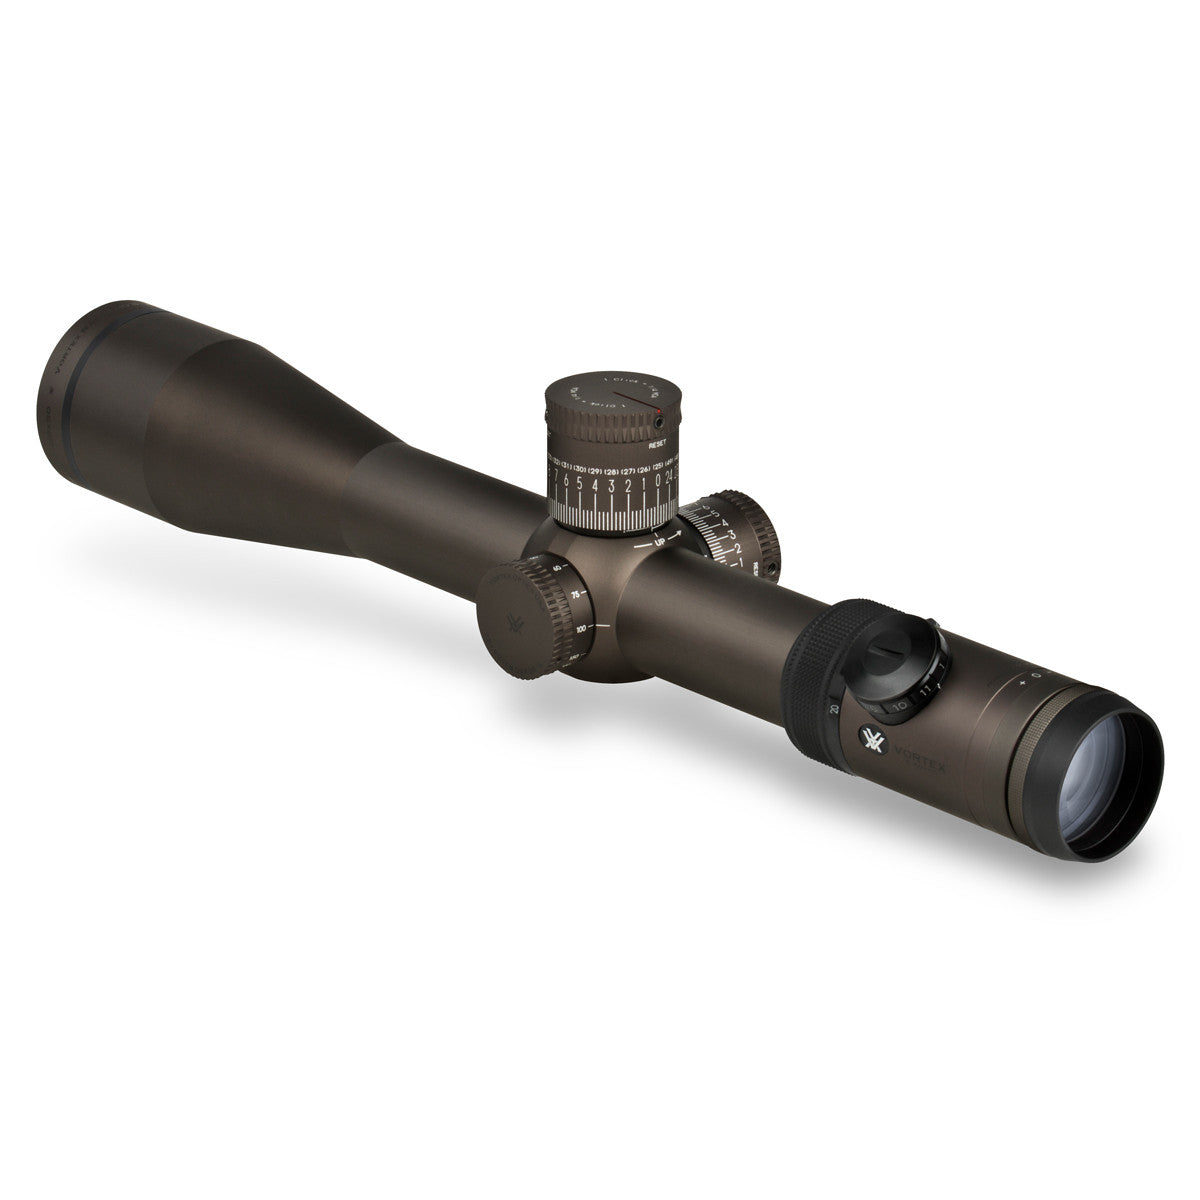 Vortex Razor HD 5-20x50 FFP Riflescope in Vortex Razor HD 5-20x50 FFP Riflescope - goHUNT Shop by GOHUNT | Vortex Optics - GOHUNT Shop